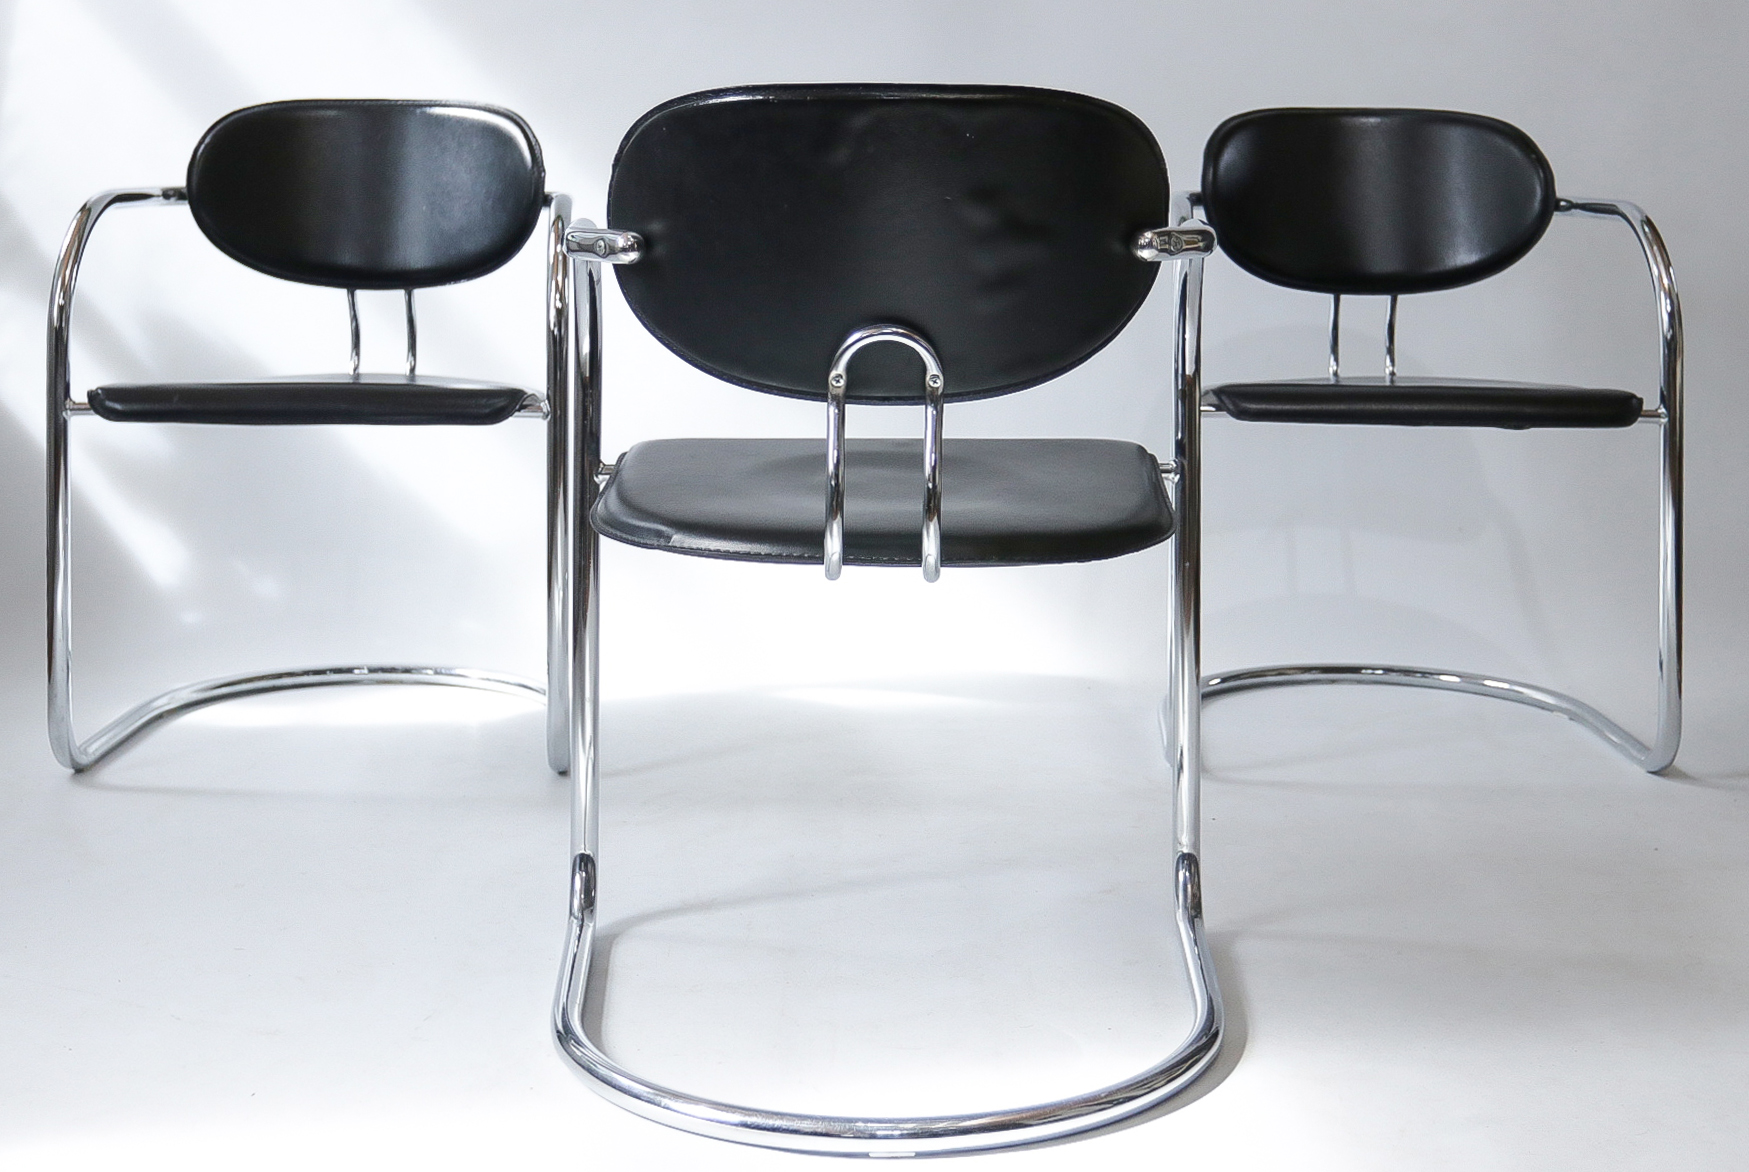 paling naam zacht 4 Italiaans Design Tuigleer Chroom Buisframe stoelen jaren 80 – Dehuiszwaluw